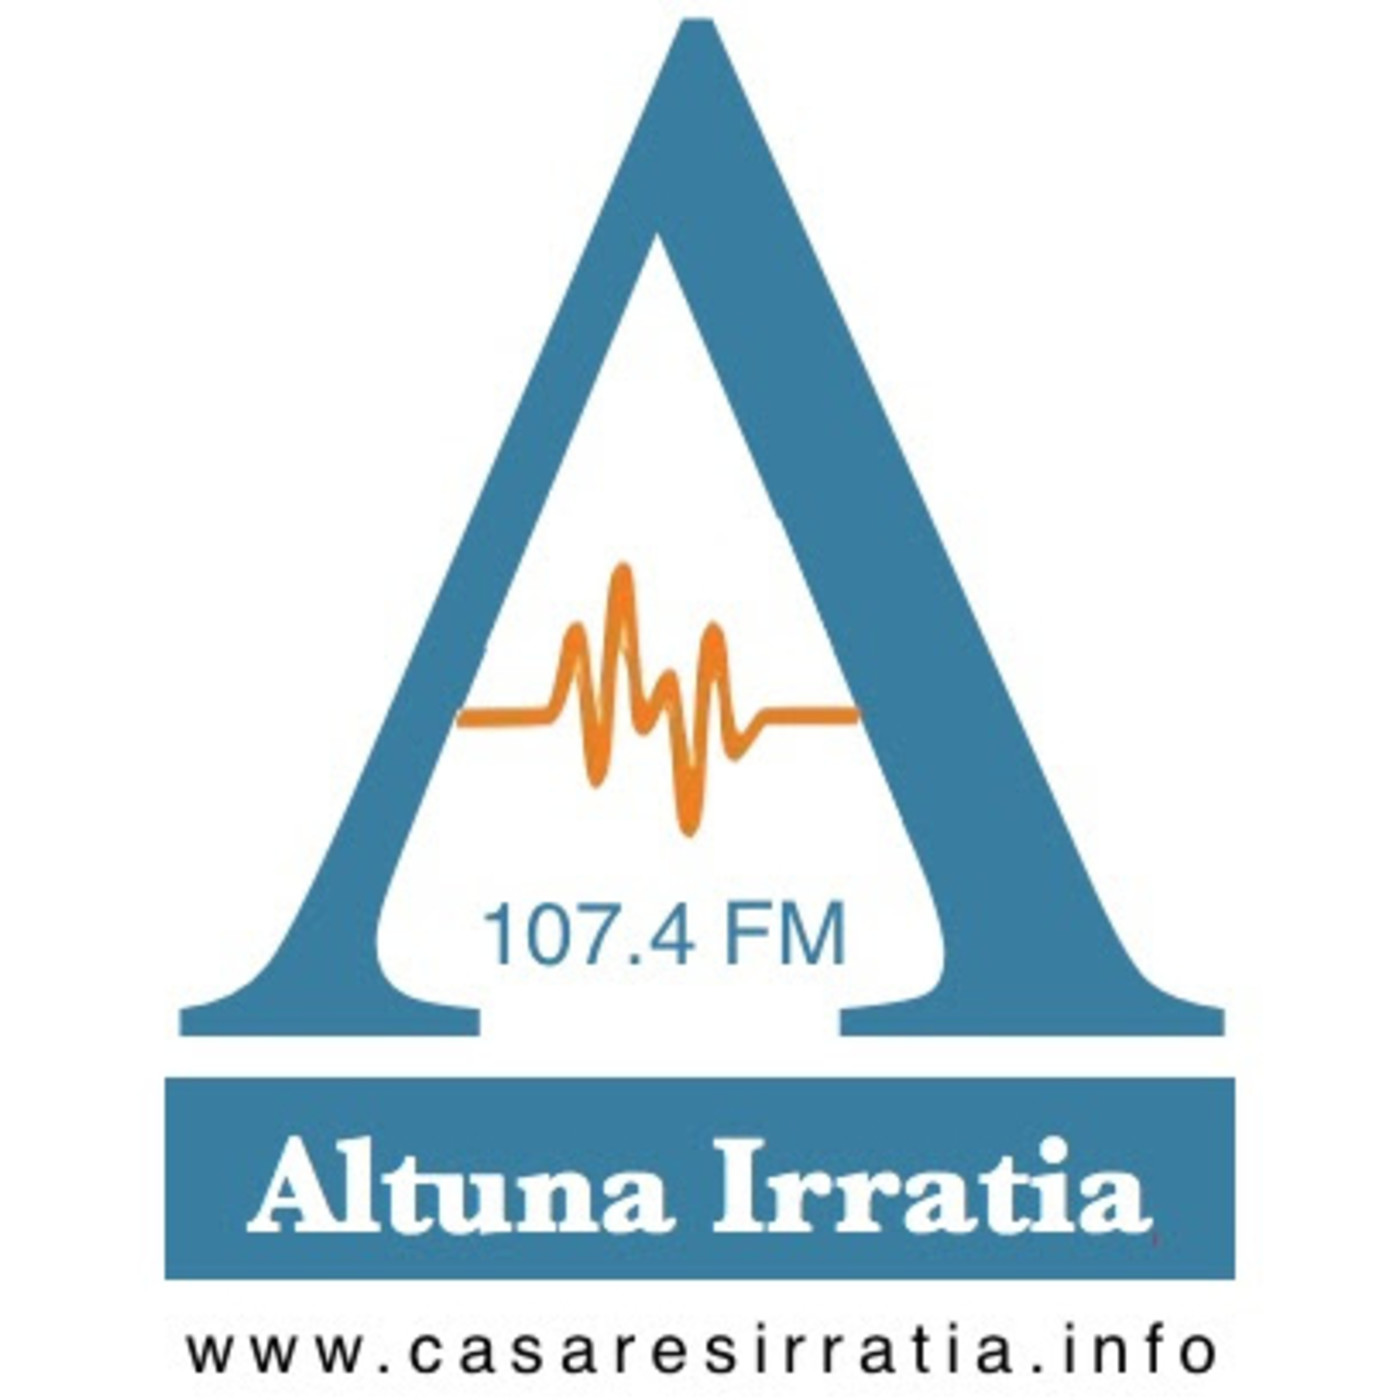 Altuna Irratia